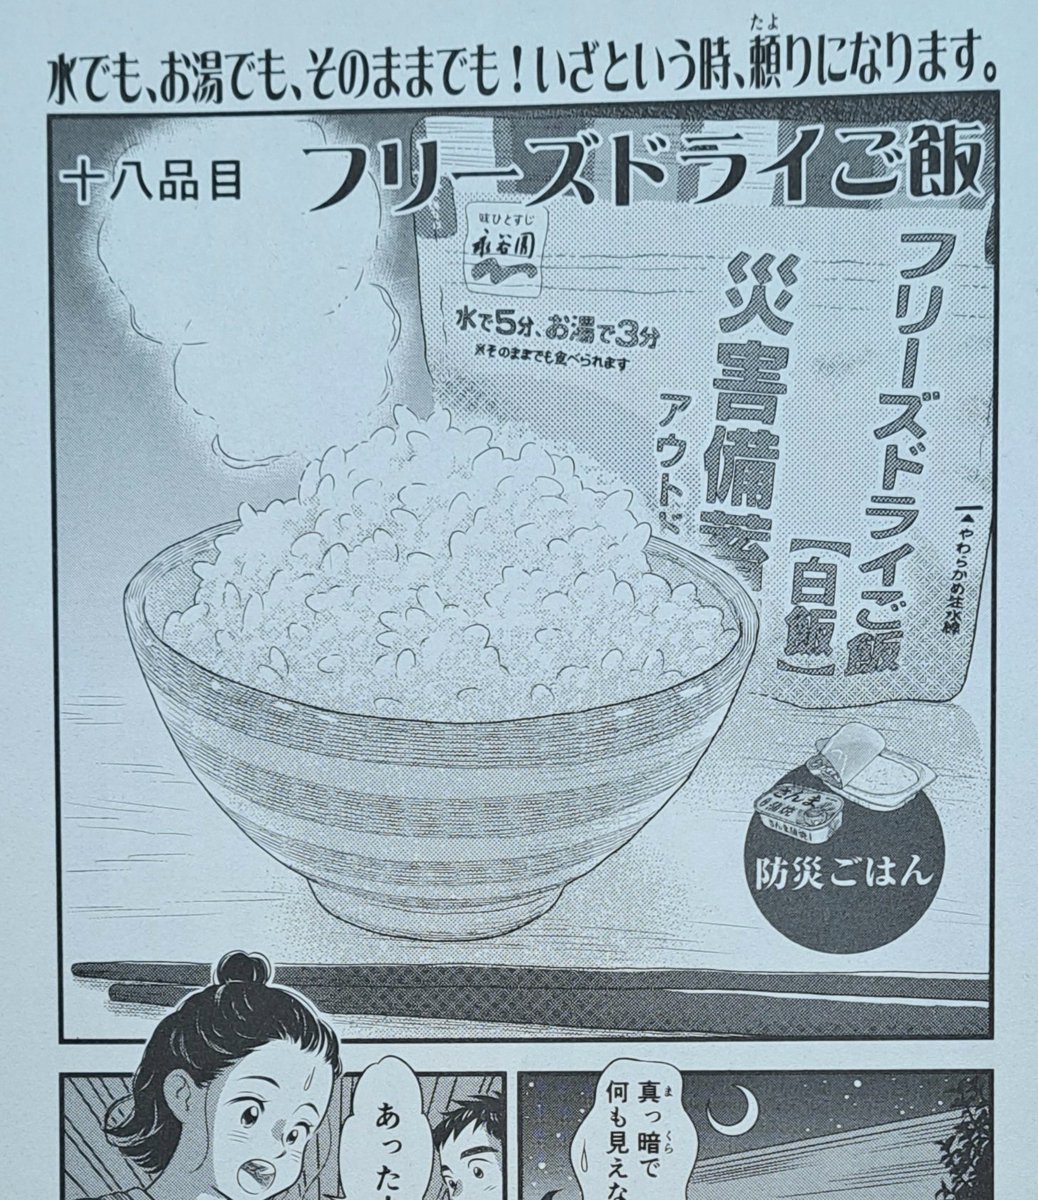 8月7日発売『ときめきごはん No.39』 防災ごはんの「フリーズドライご飯」の漫画を描かせていただきました。 是非ご覧くださると嬉しいです。よろしくお願いいたします🙇✨ #思い出食堂 #グルメ漫画